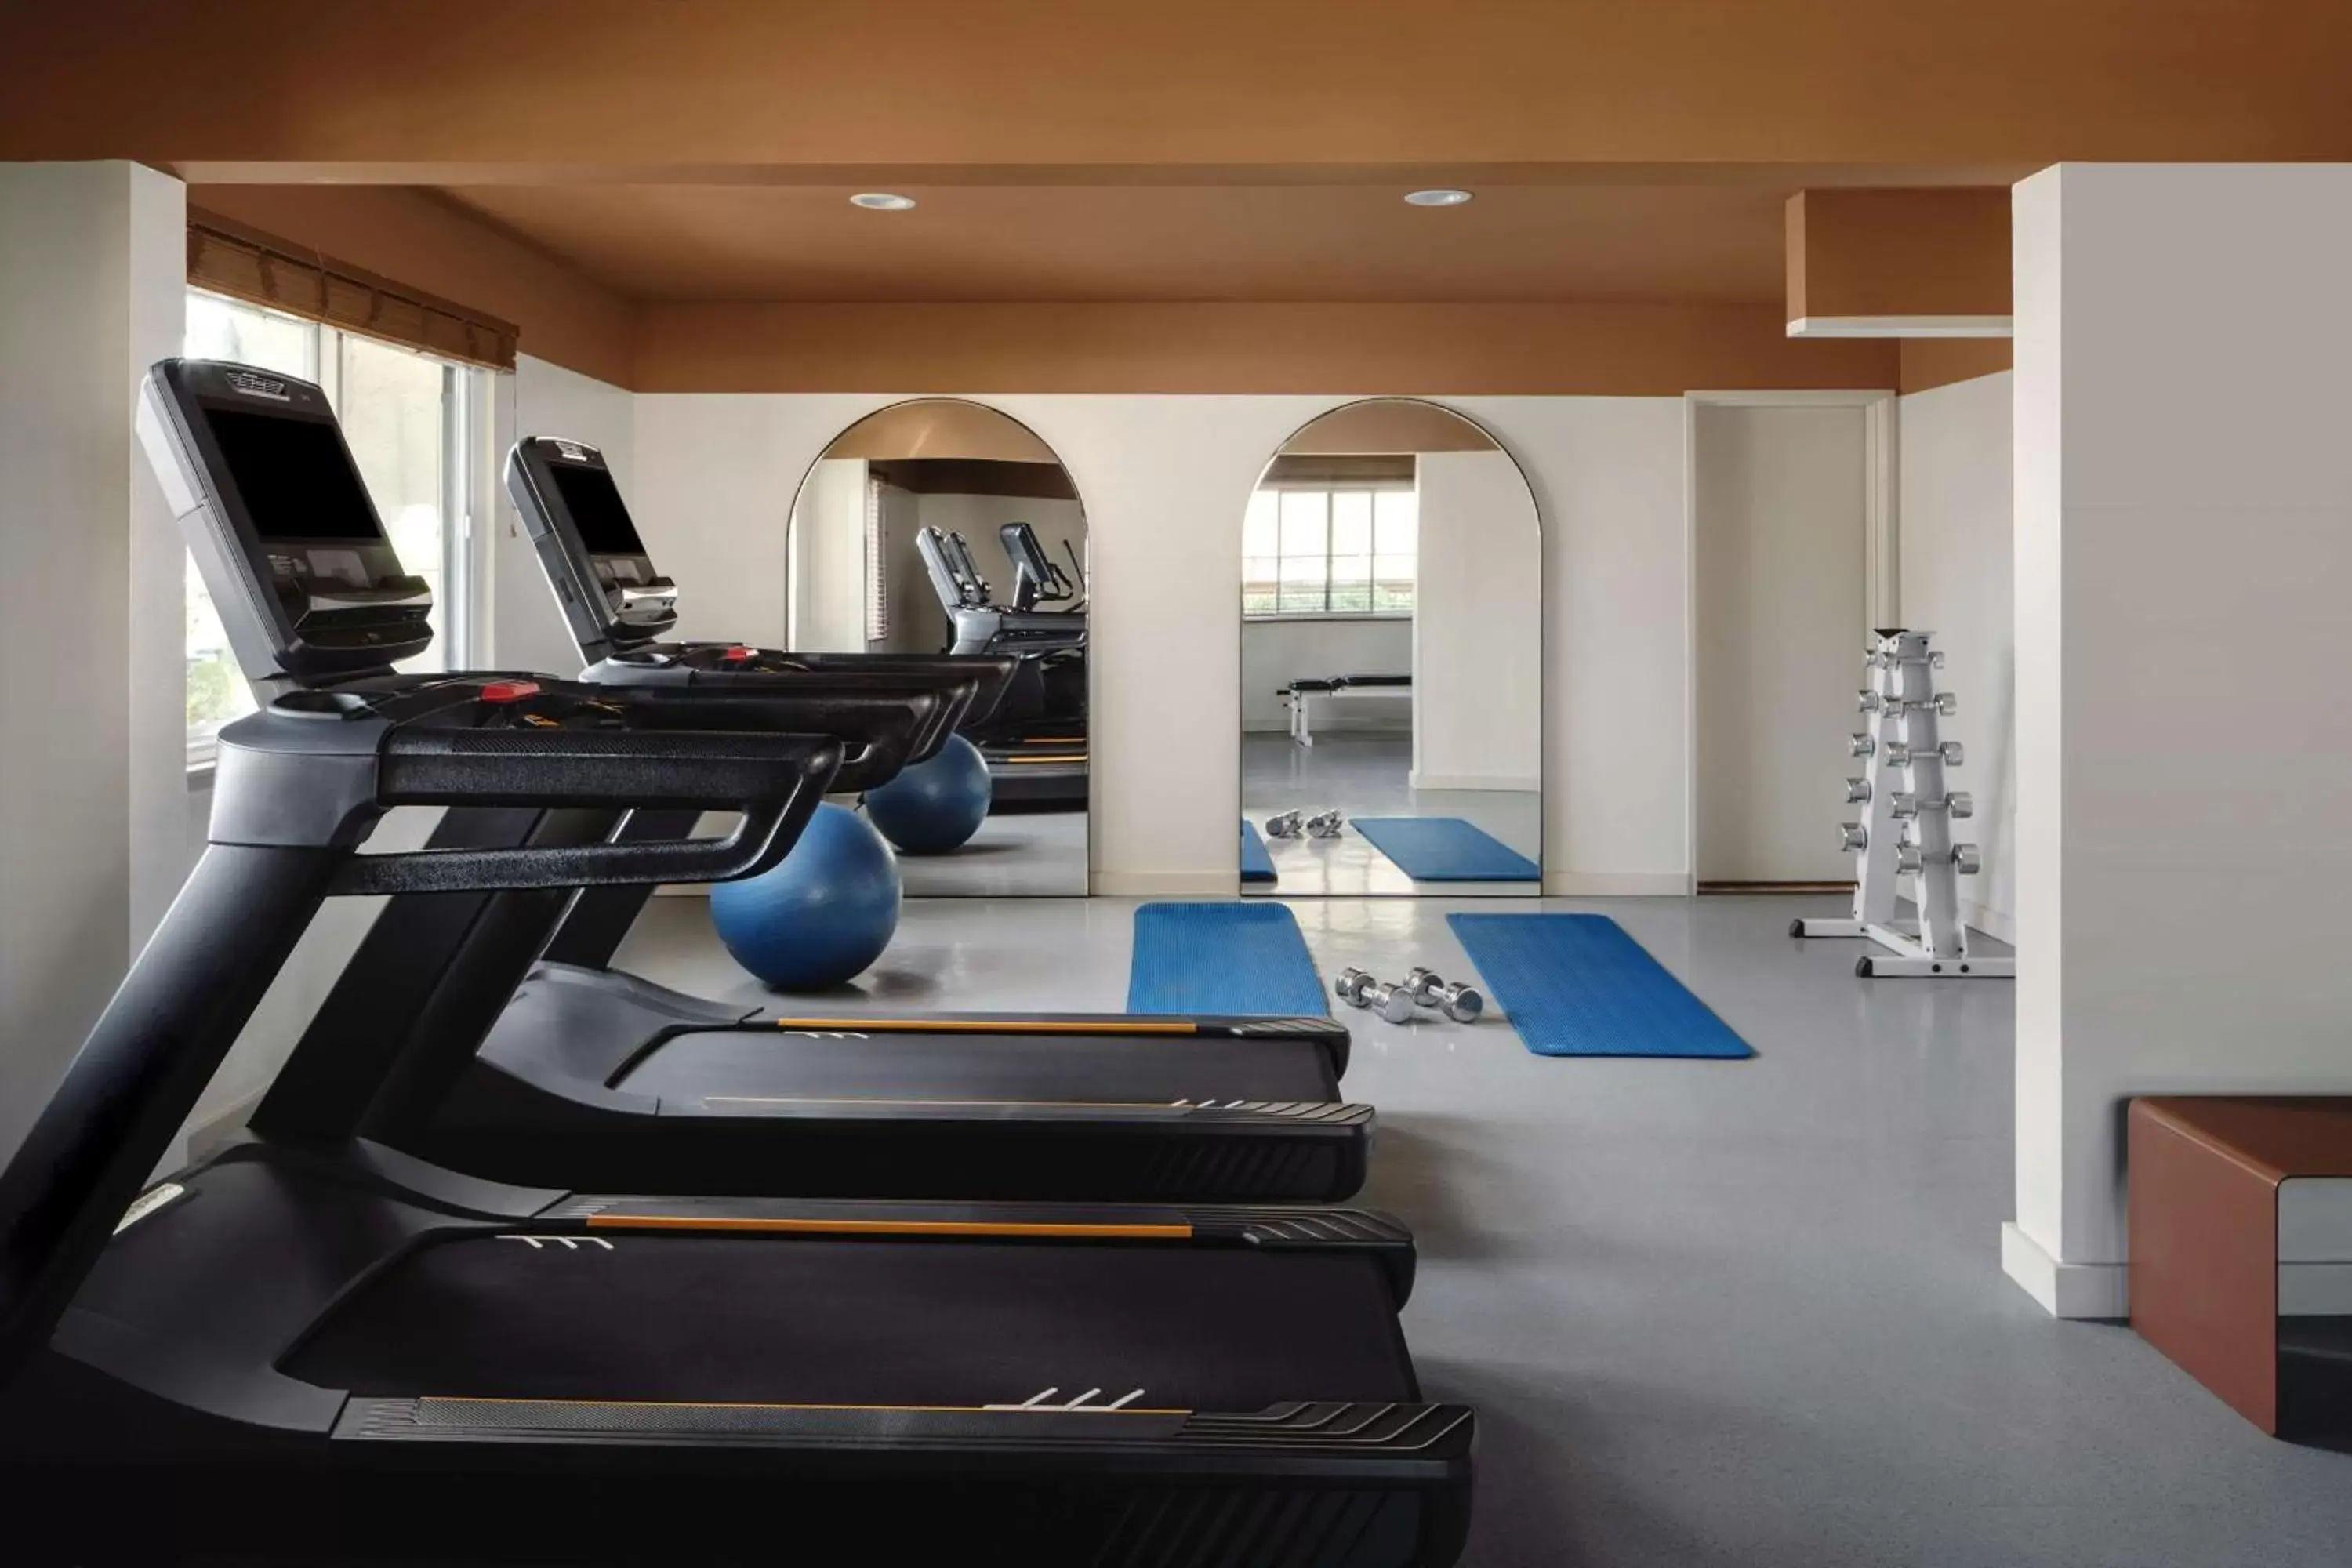 Fitness centre/facilities, Fitness Center/Facilities in Avante, a JDV by Hyatt Hotel